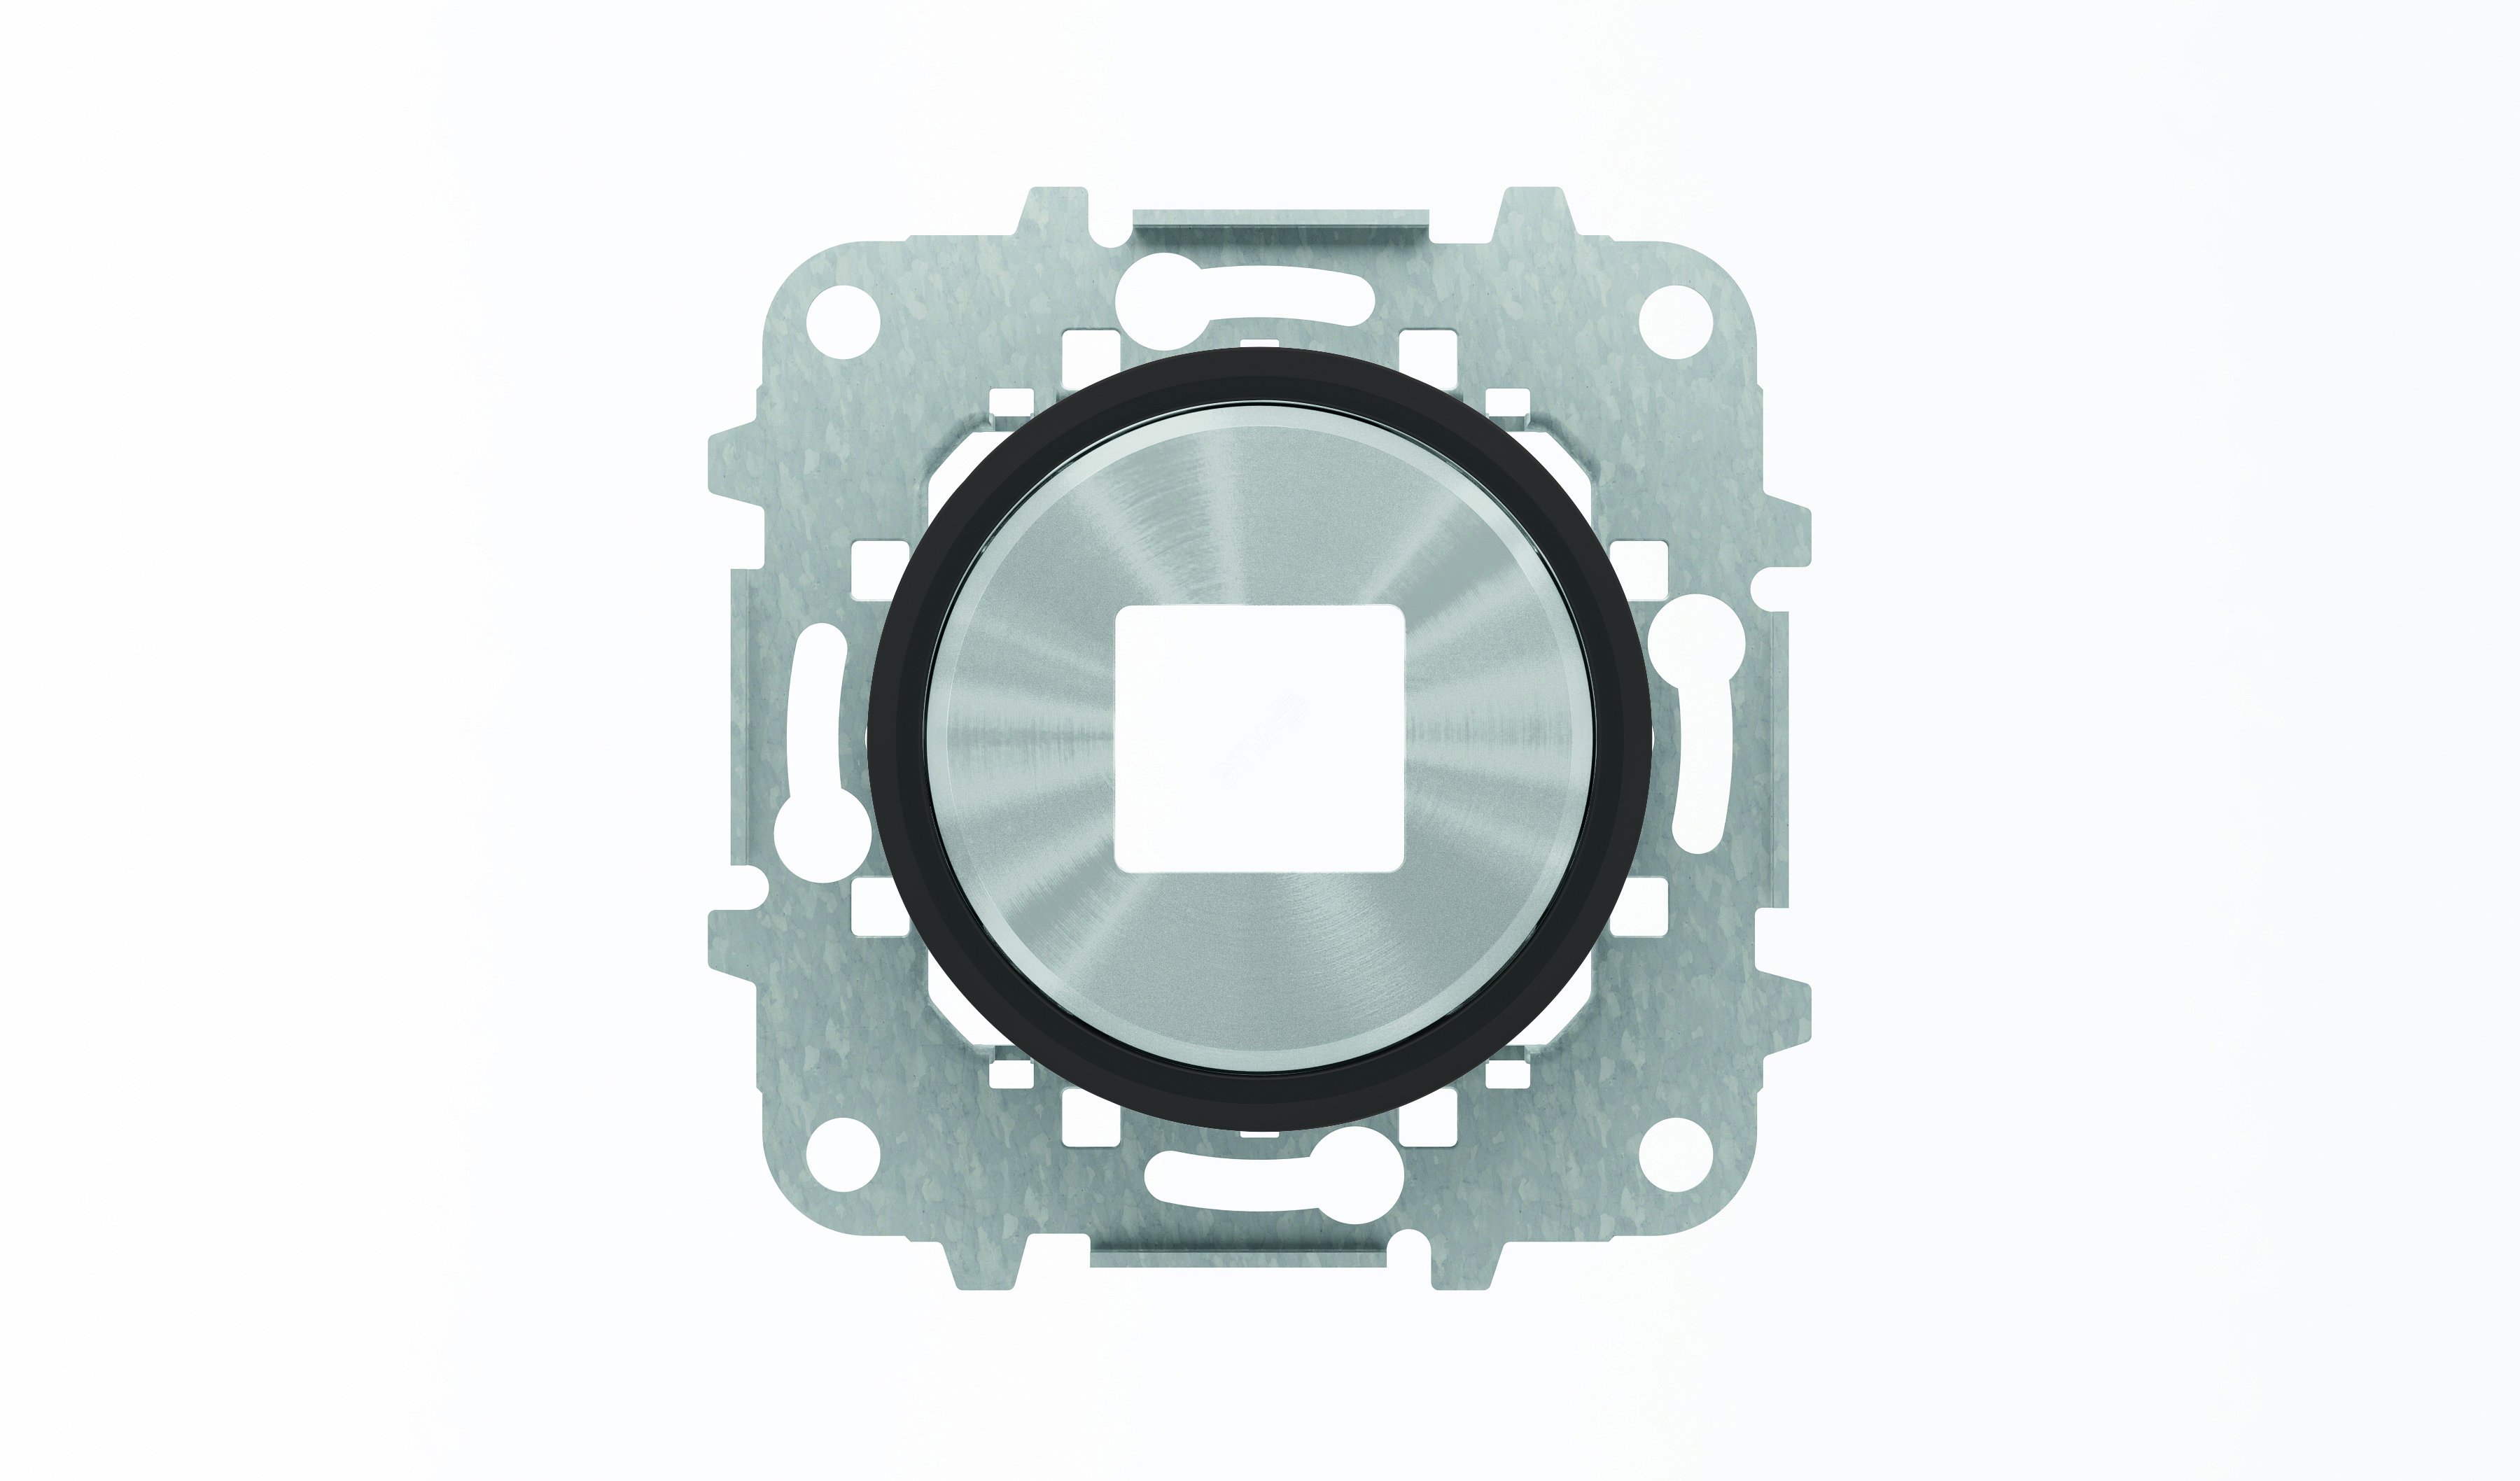 Накладка для механизмов зарядного устройства USB 8185 SKY Moon кольцо черное стекло 8685 CN ABB - превью 3